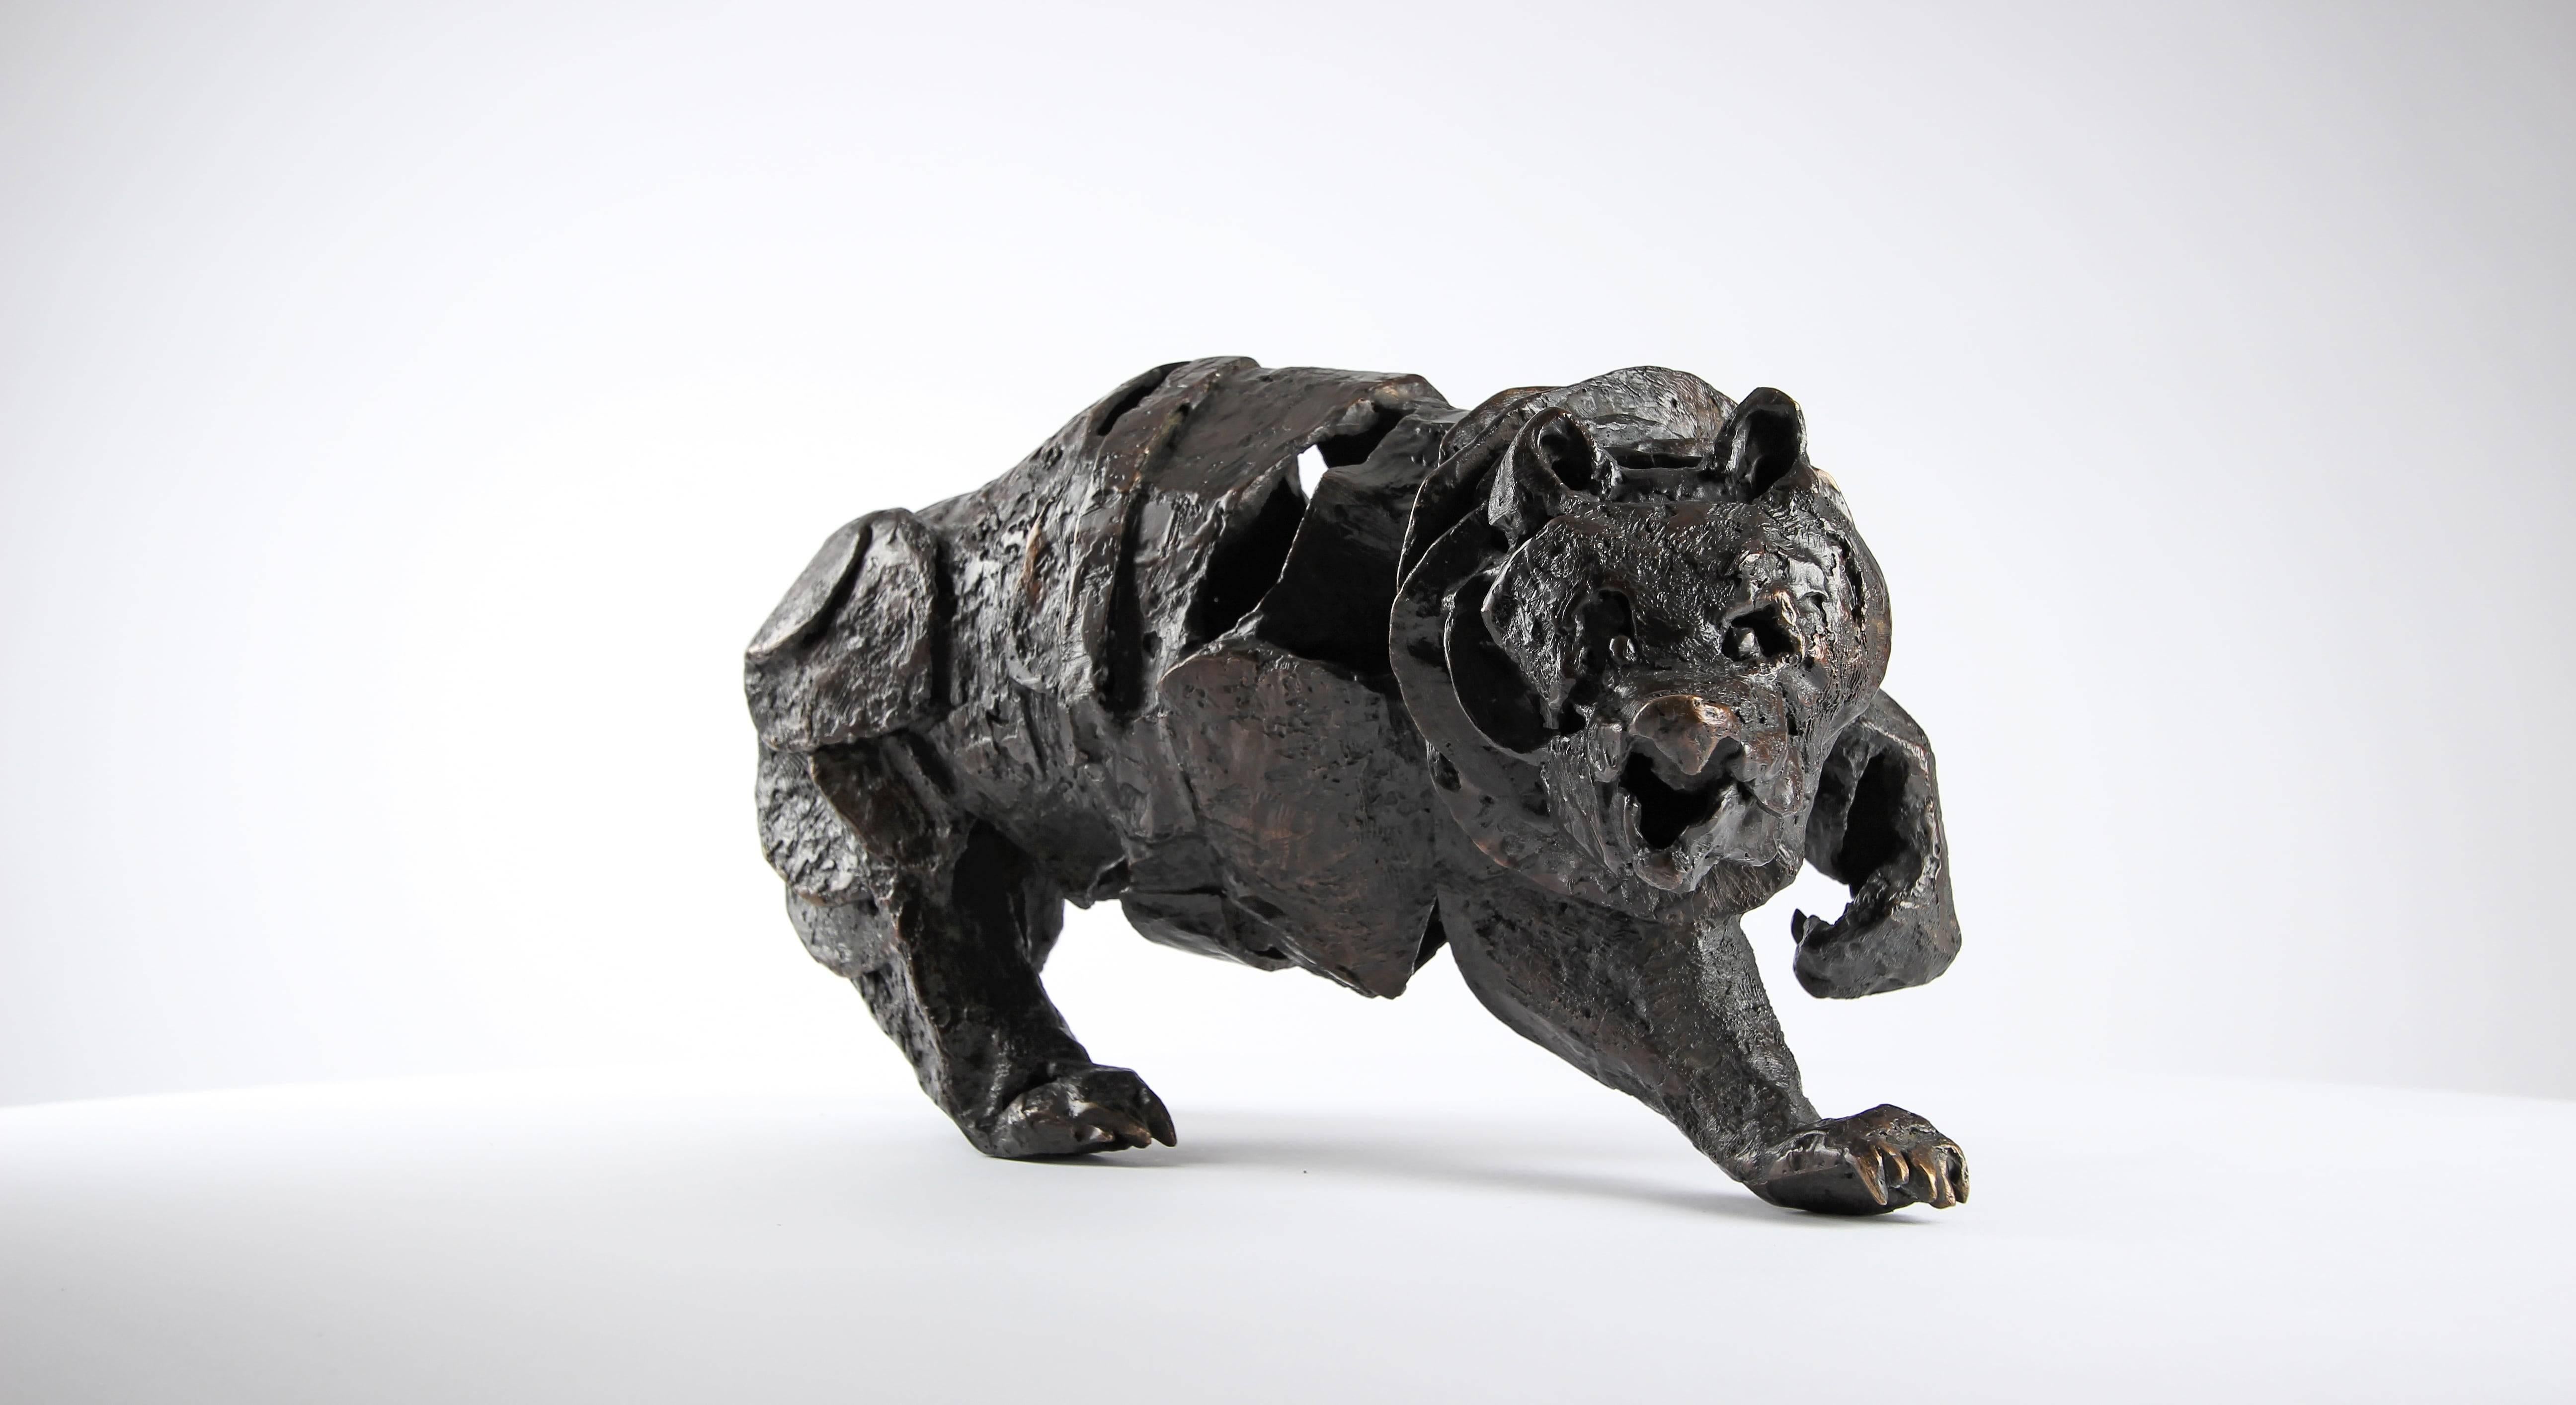 Assembly Bear - Contemporary bronze sculpture of a bear - Sculpture by Chésade